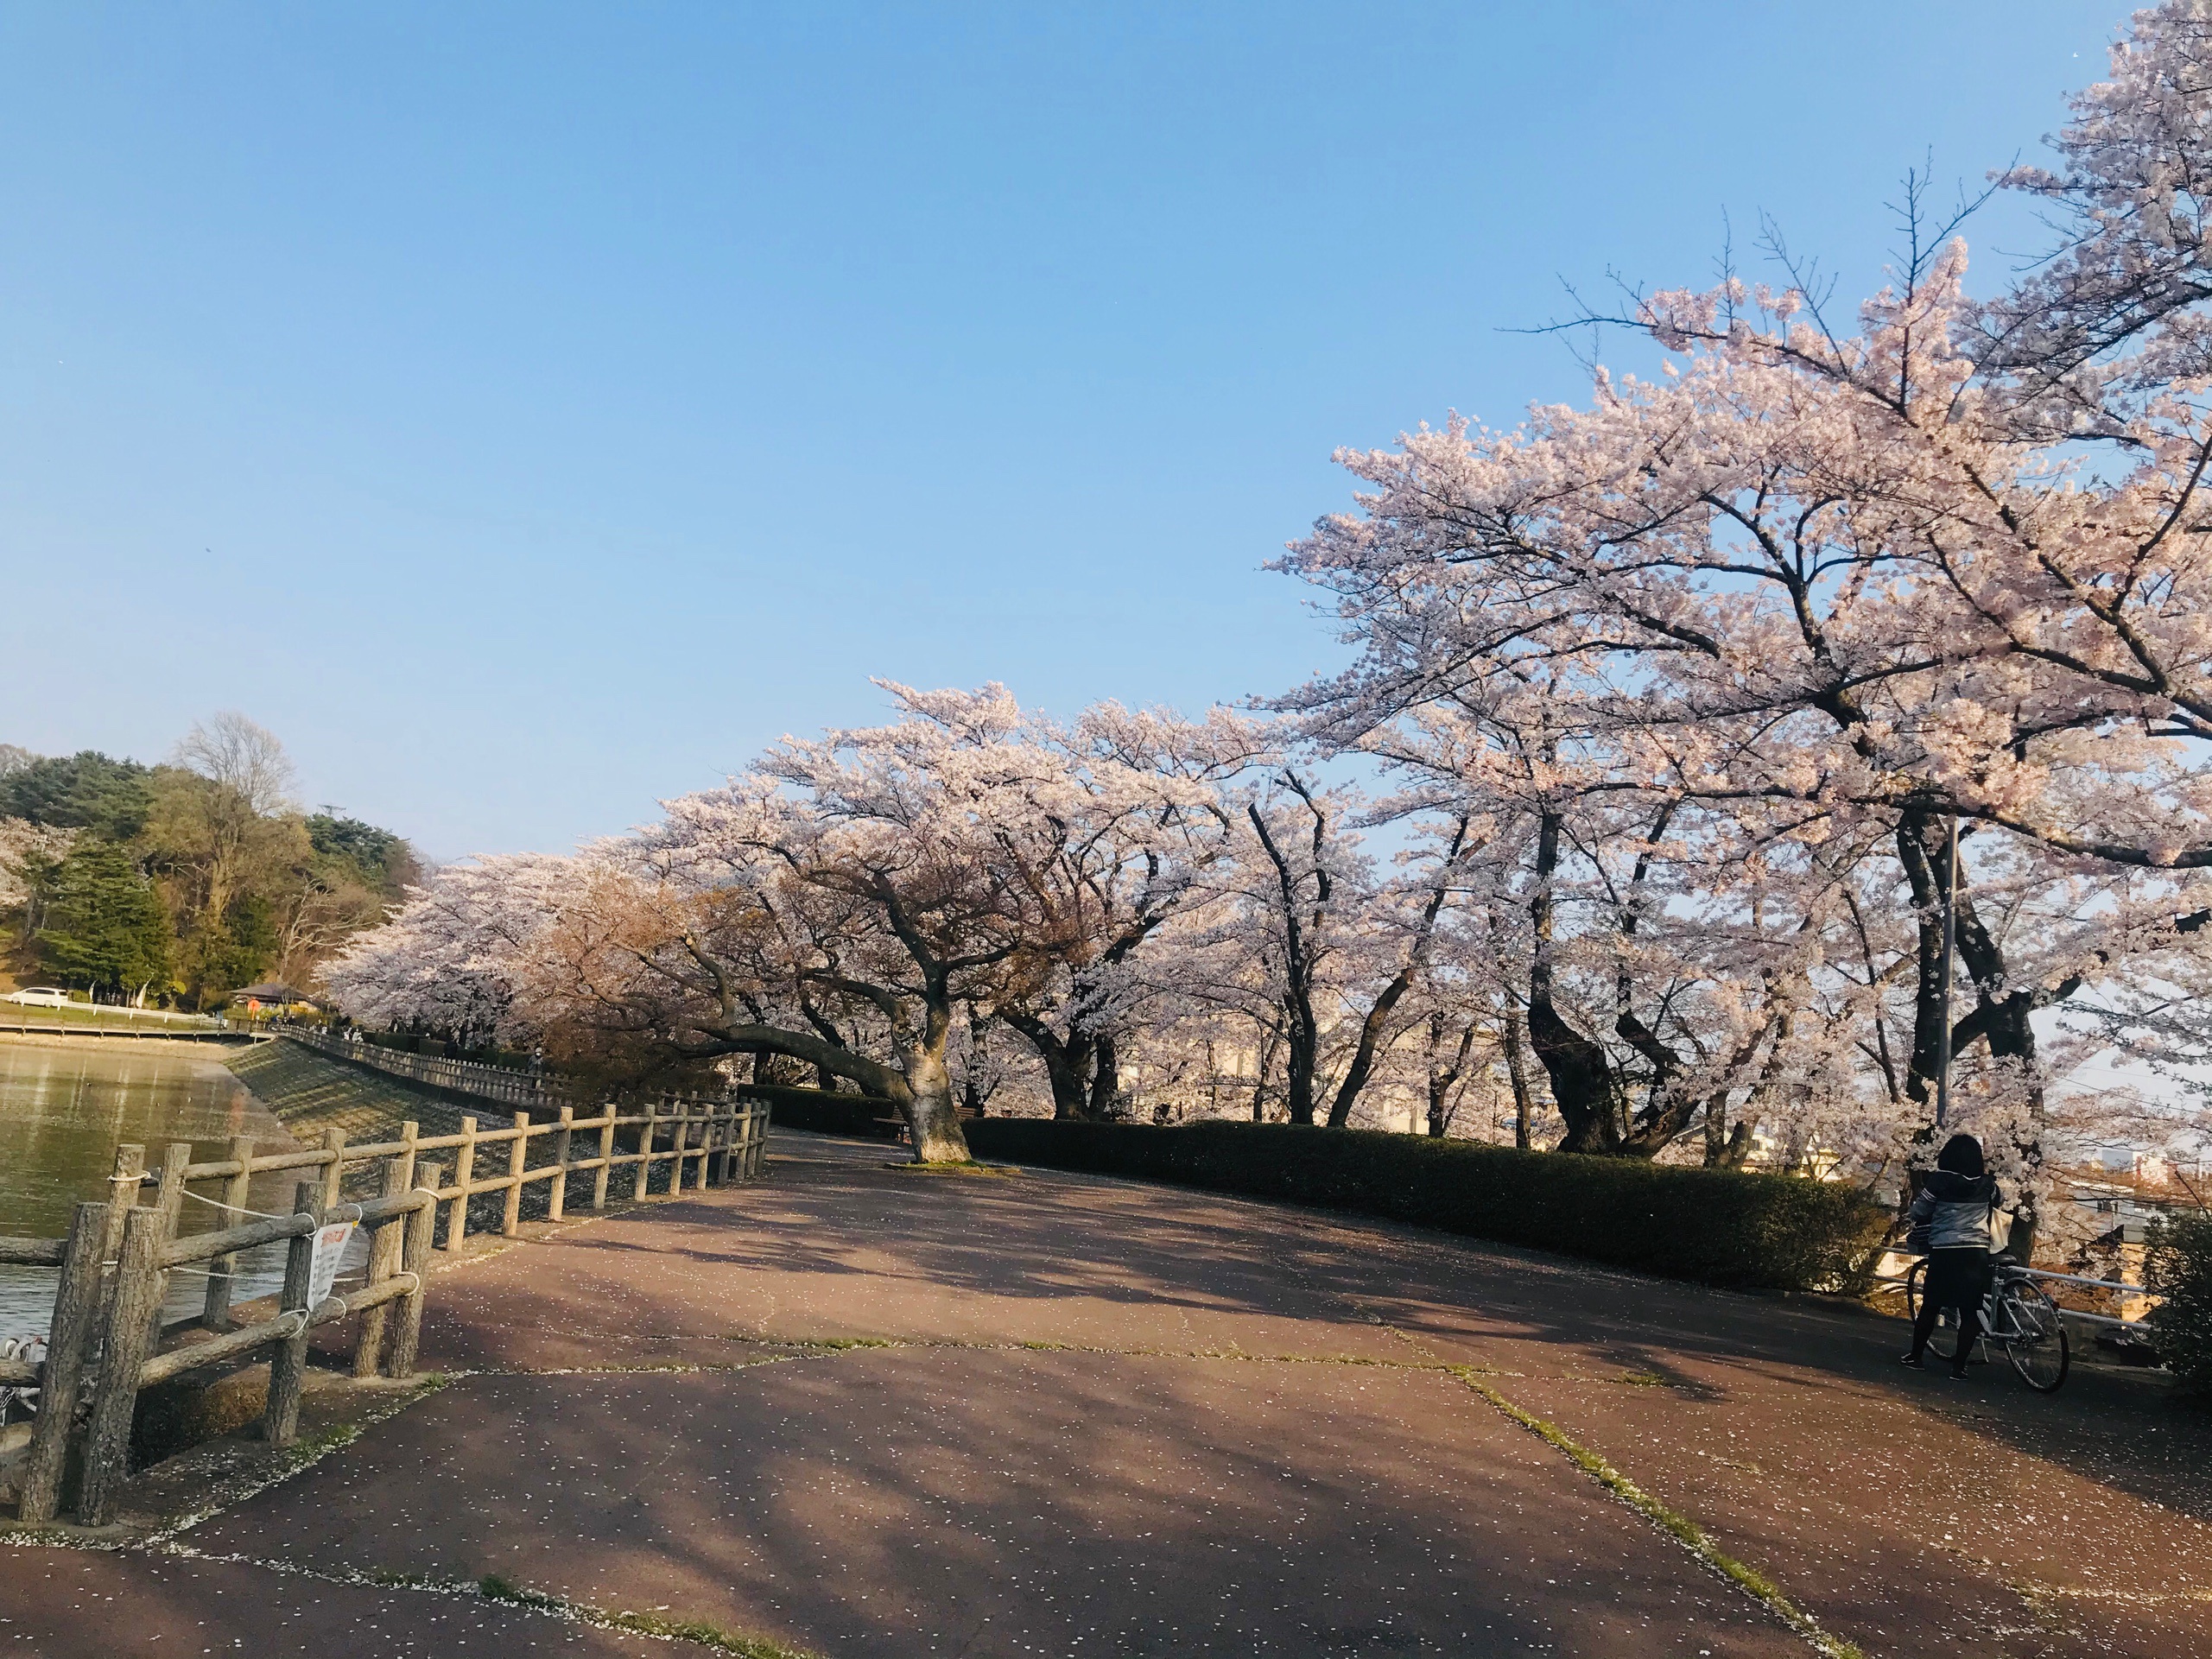 Choáng ngợp cảnh sắc hoa anh đào khoe sắc tuyệt đẹp như cổ tích ở Nhật Bản - 14